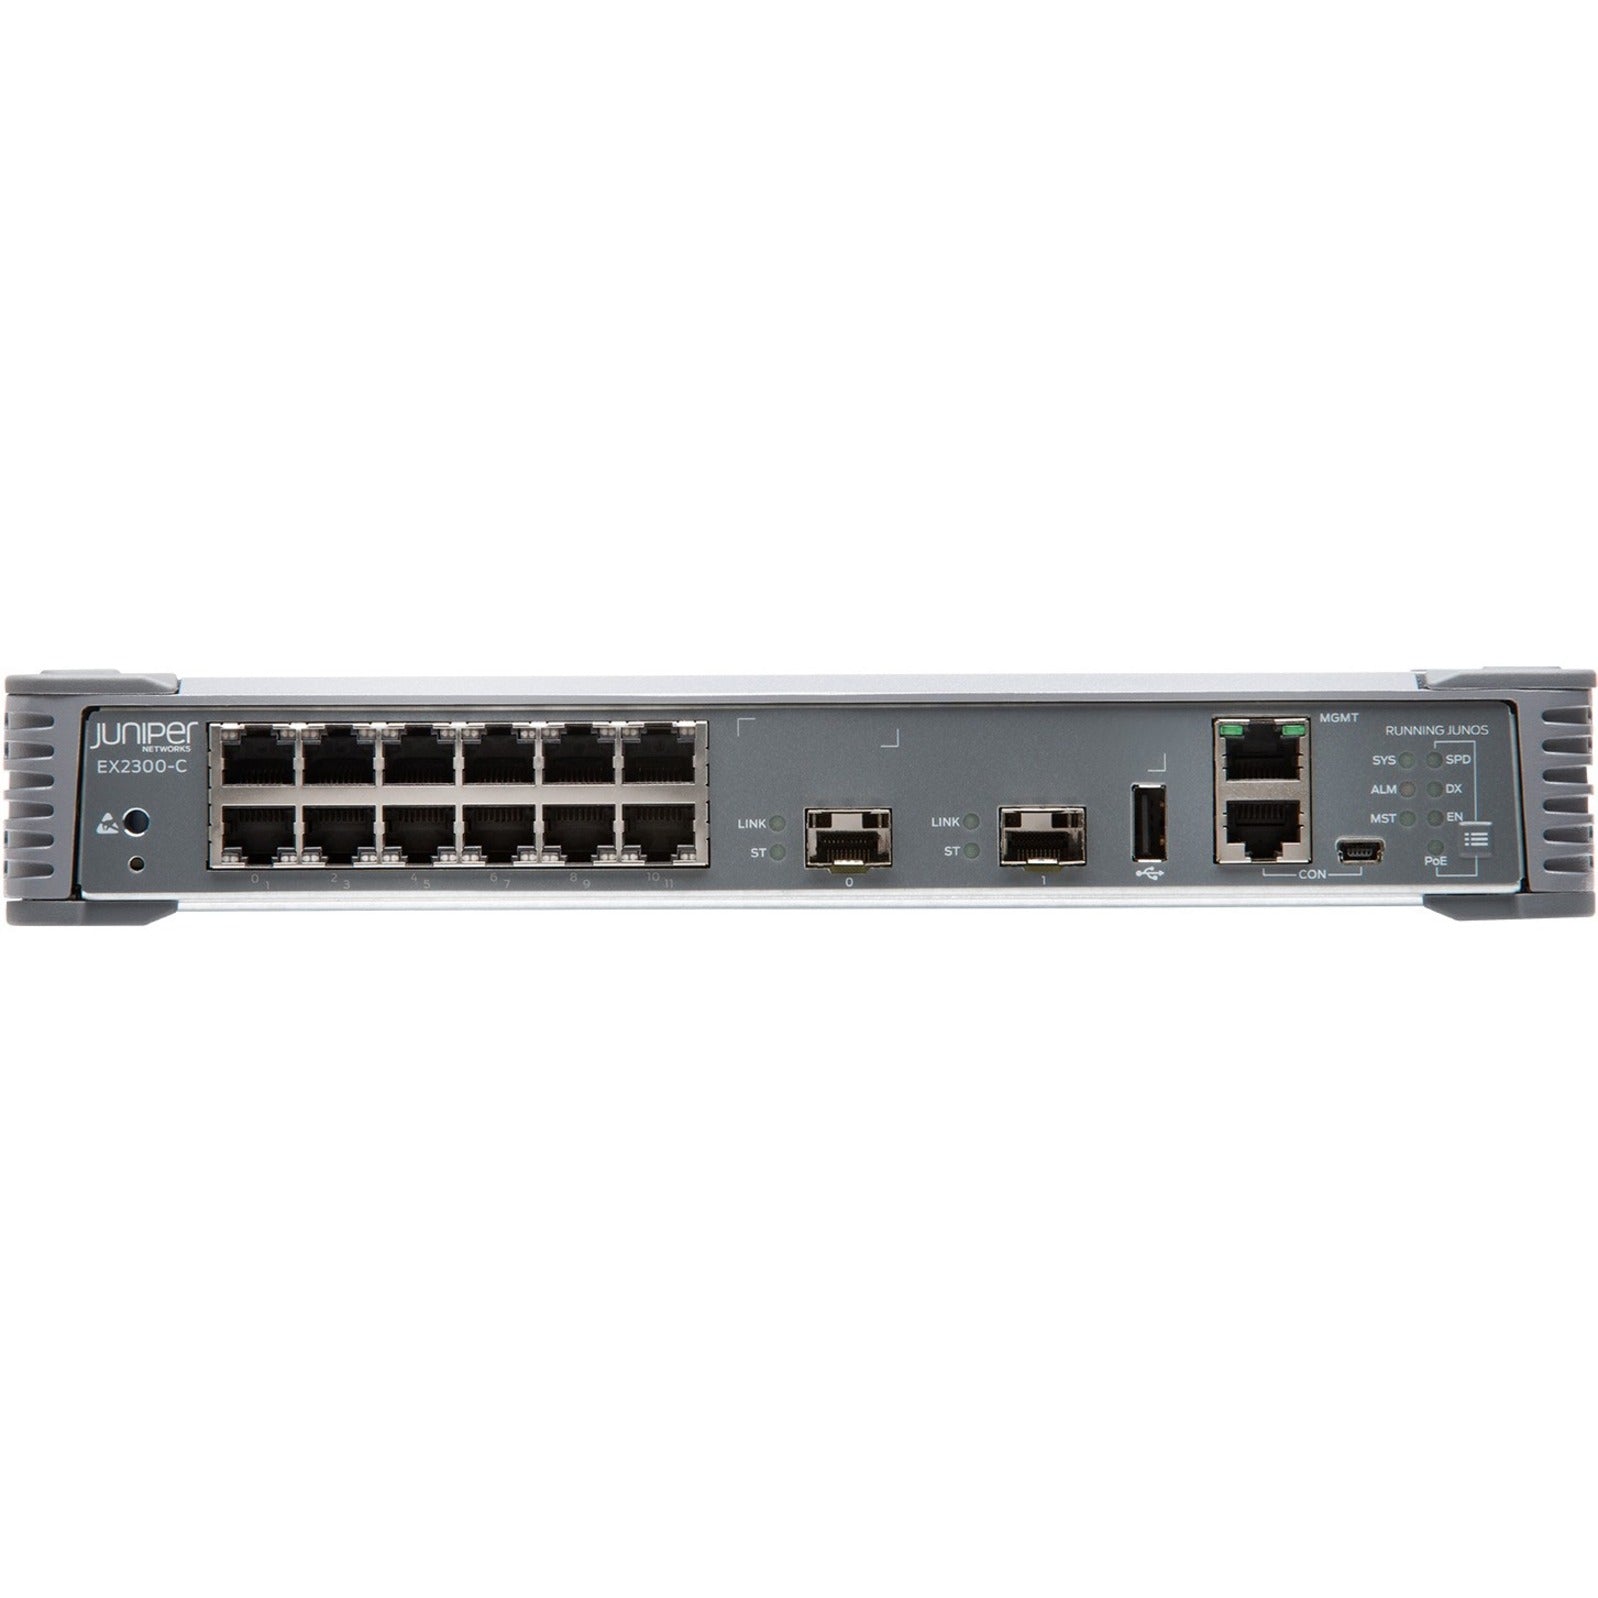 Juniper EX2300-C-12P Compact Ethernet Switch, 12 Gigabit Ethernet Ports, 2 10 Gigabit Ethernet Expansion Slots